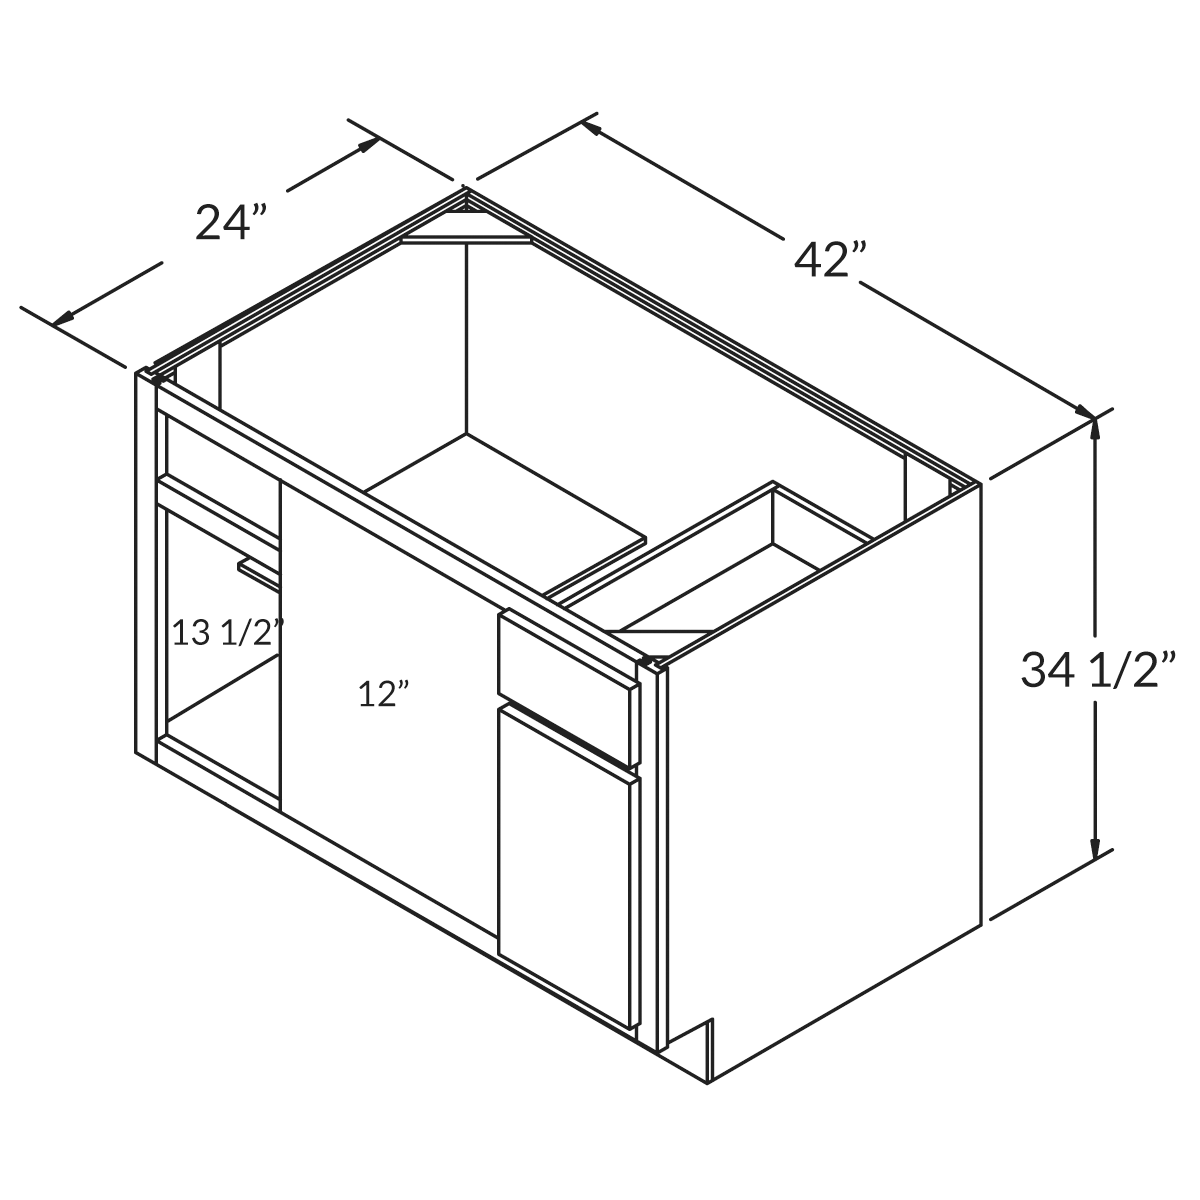 Cubitac Basic Oxford Latte Blind Corner Base 42"D Assembled Cabinet Wireframe